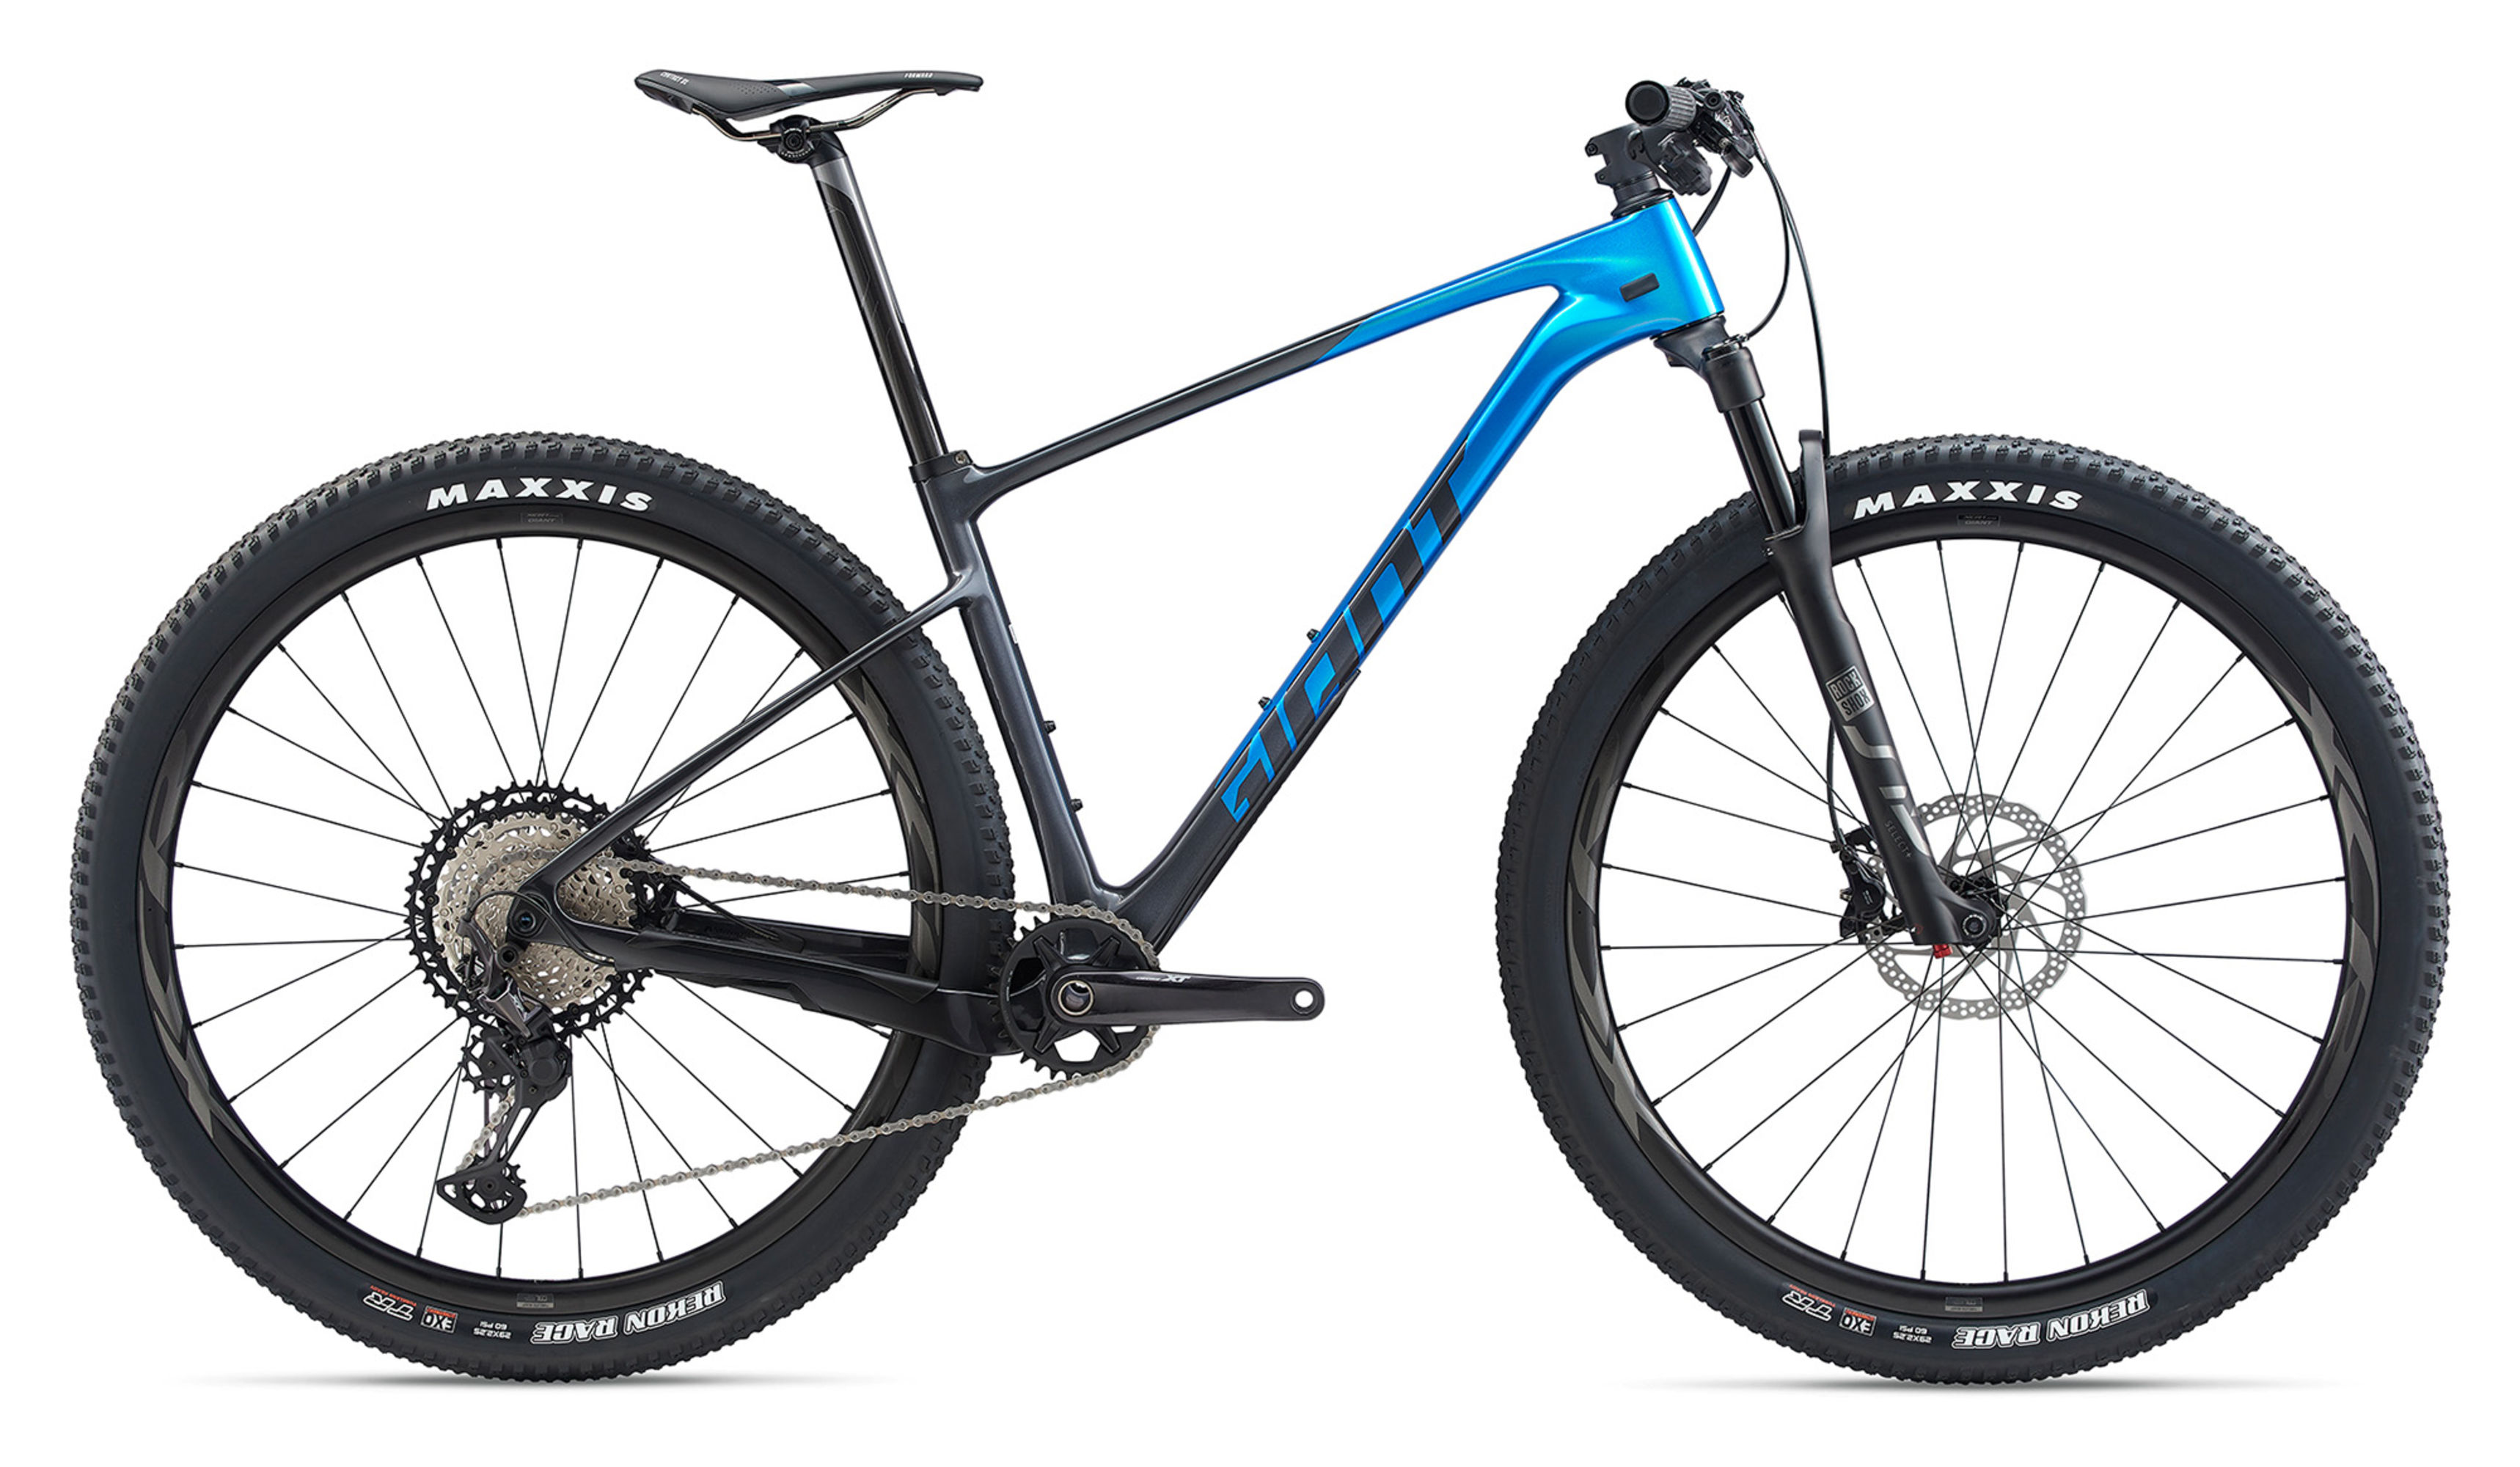  Отзывы о Горном велосипеде Giant XTC Advanced SL 29 1 2020